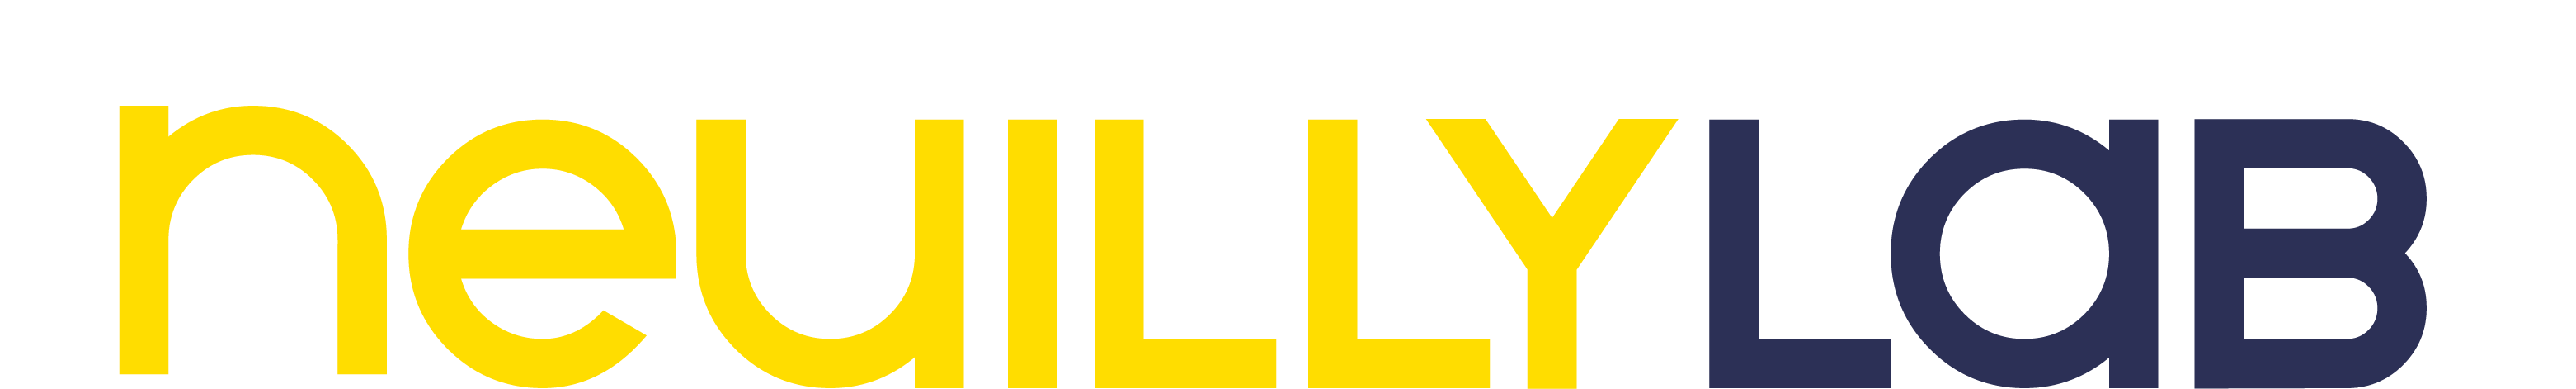 Logo_NeuillyLab_Charte-2019_web